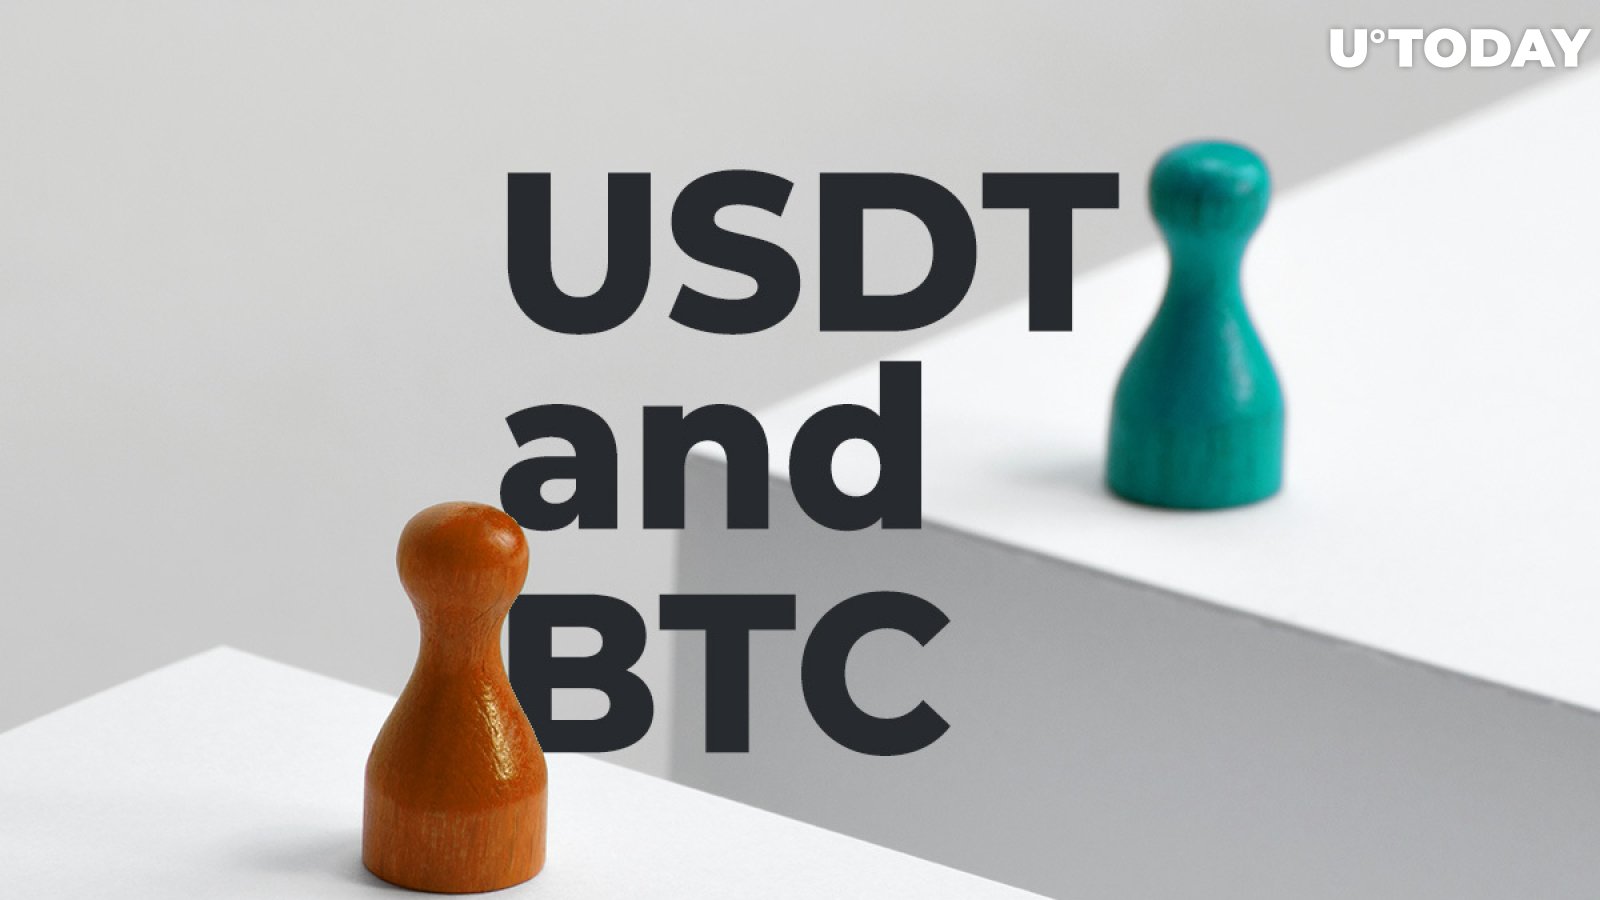 Bitcoin (BTC) Trader Indicates Surprising Correlation Between USDT and BTC